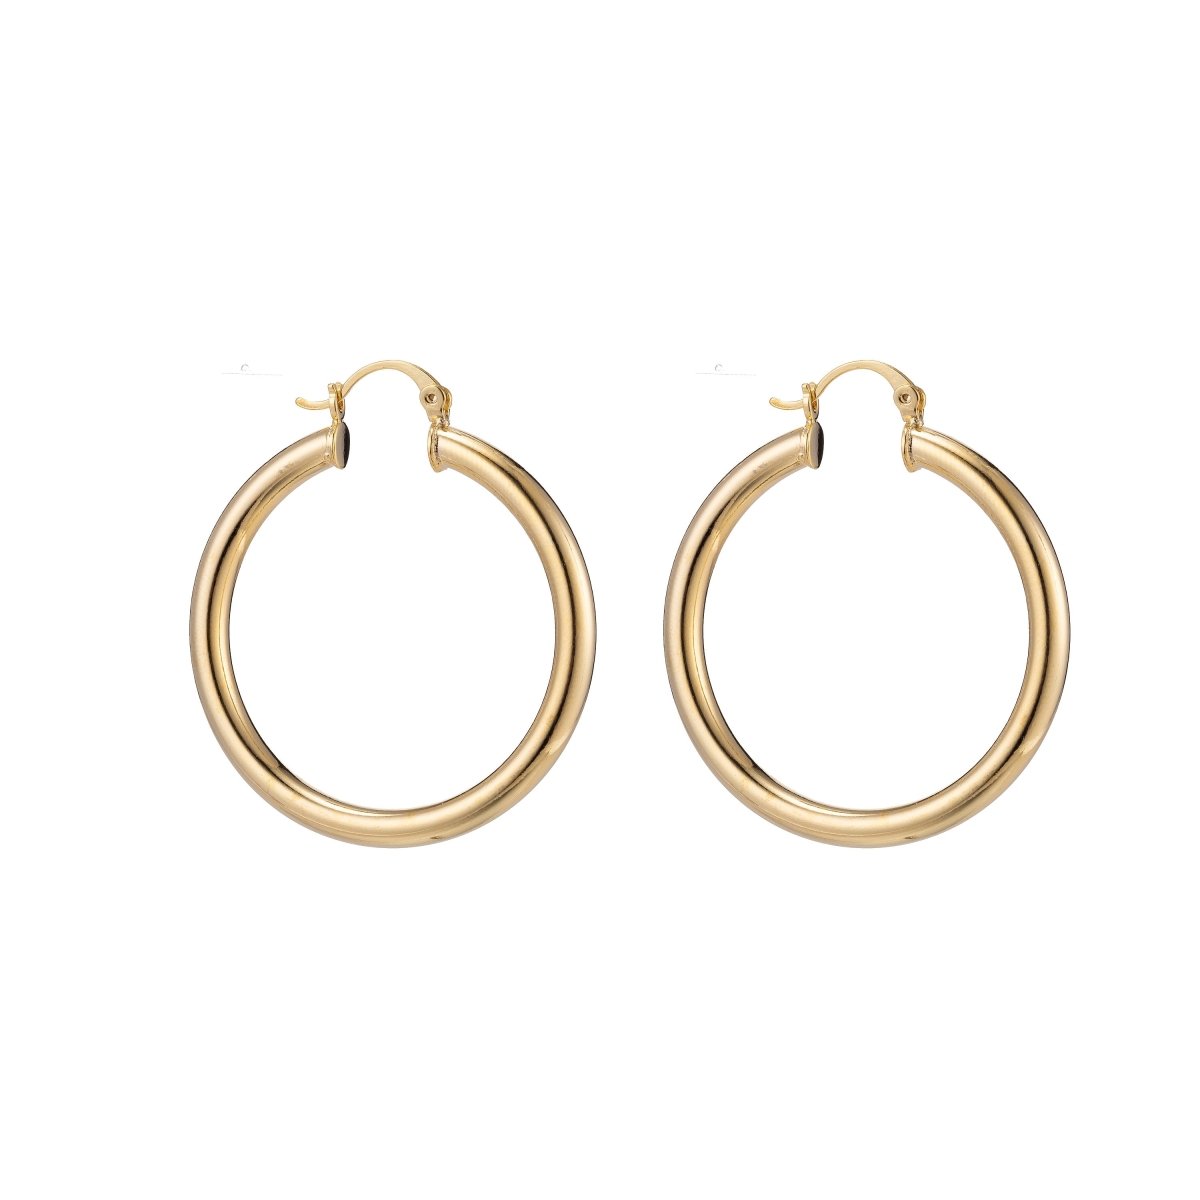 50mm Gold Hoop Earrings, Fat Hoop Earrings, Chubby Hoop Earrings, Gold Hoop Earrings, Thick Gold Hoops - DLUXCA